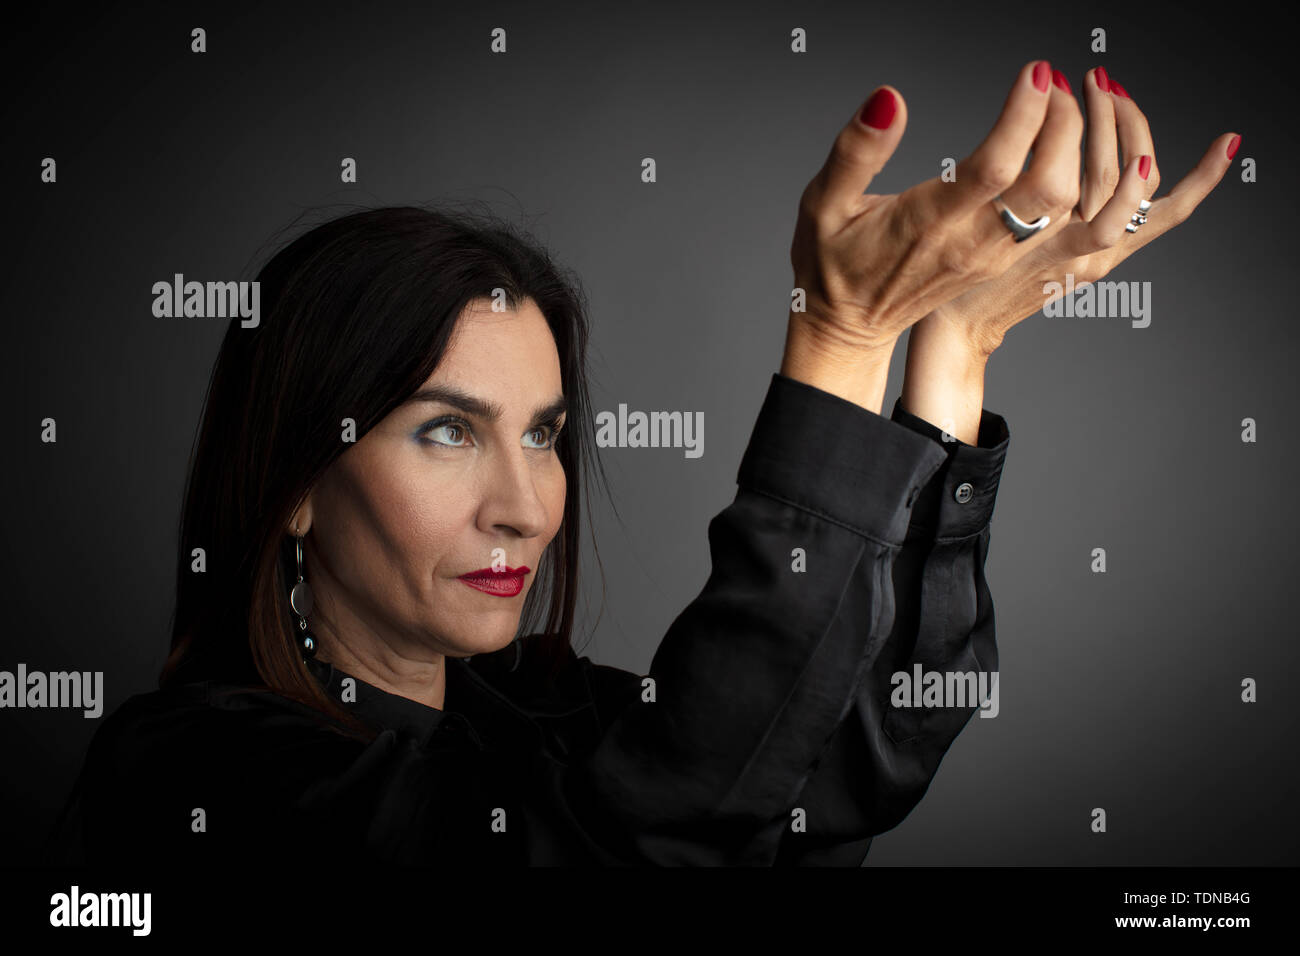 Portrait von Frau mittleren Alters Interaktion mit Händen, dunkelgrauer Hintergrund. Stockfoto